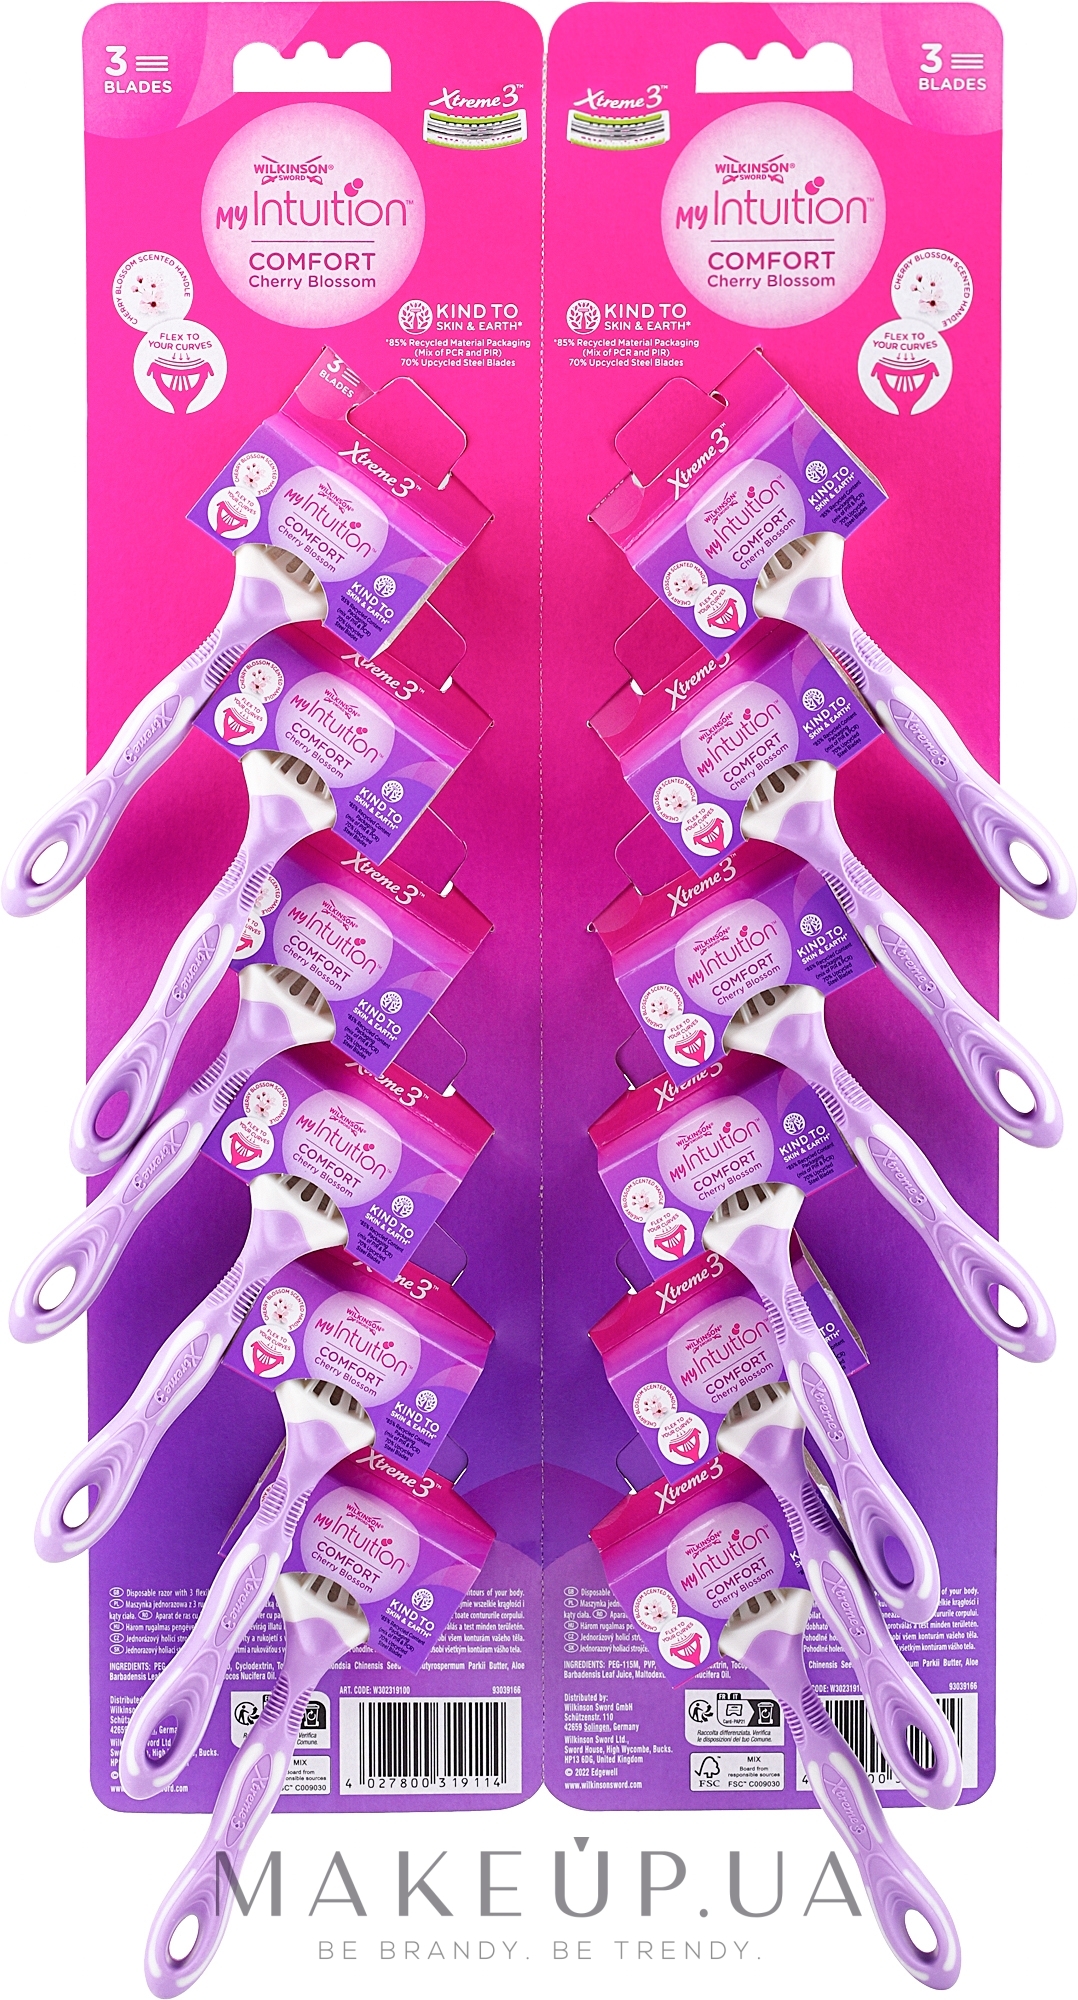 Женские одноразовые бритвы с тремя лезвиями, 12 шт. - Wilkinson Sword Xtreme 3 My Intuition Comfort Cherry Blossom  — фото 12шт